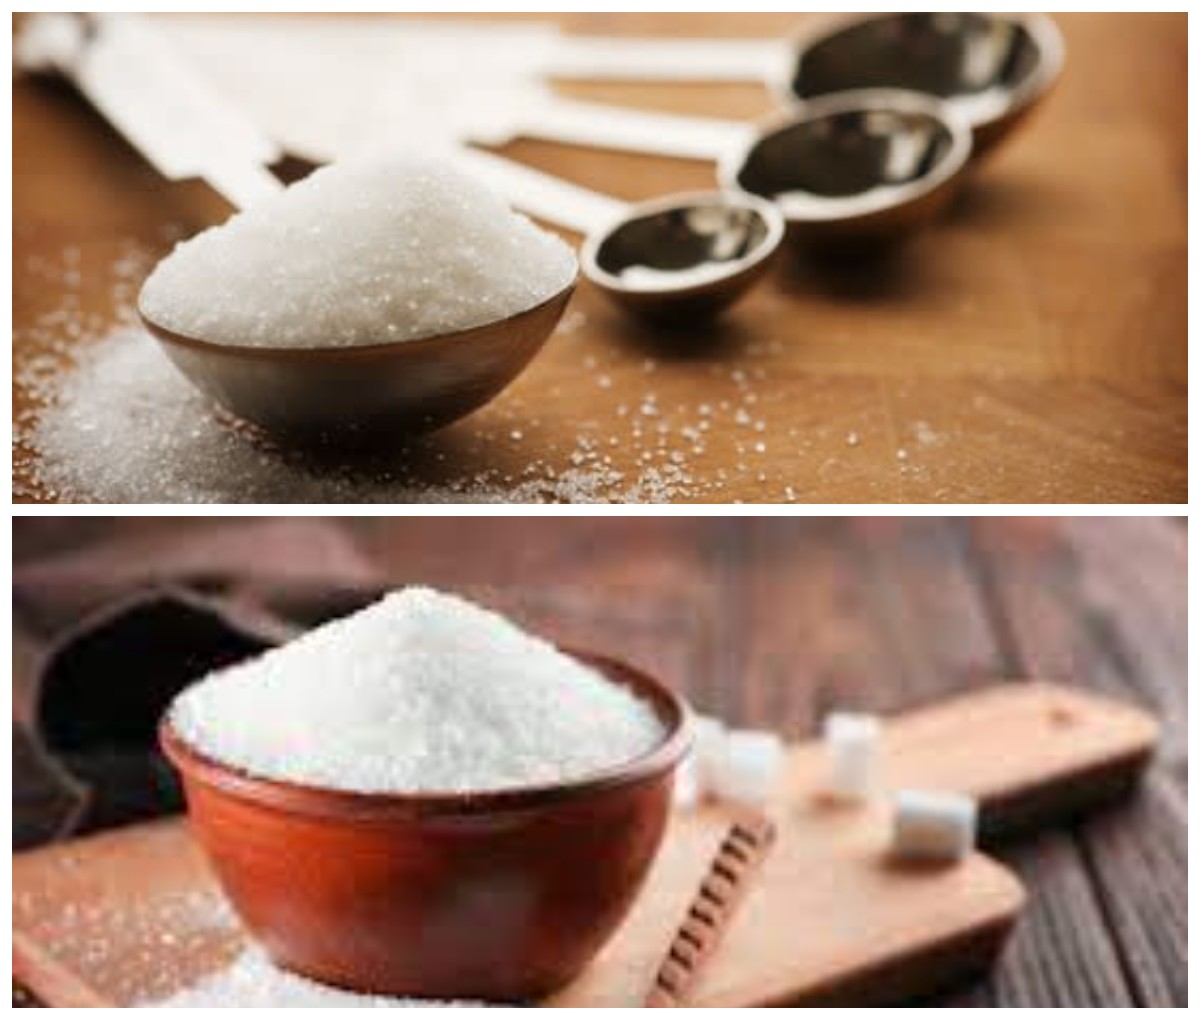 Ingin Hidup Lebih Sehat? Ganti Gula Pasirmu dengan 5 Merk Terbaik Gula Pasir Rendah Kalori Ini